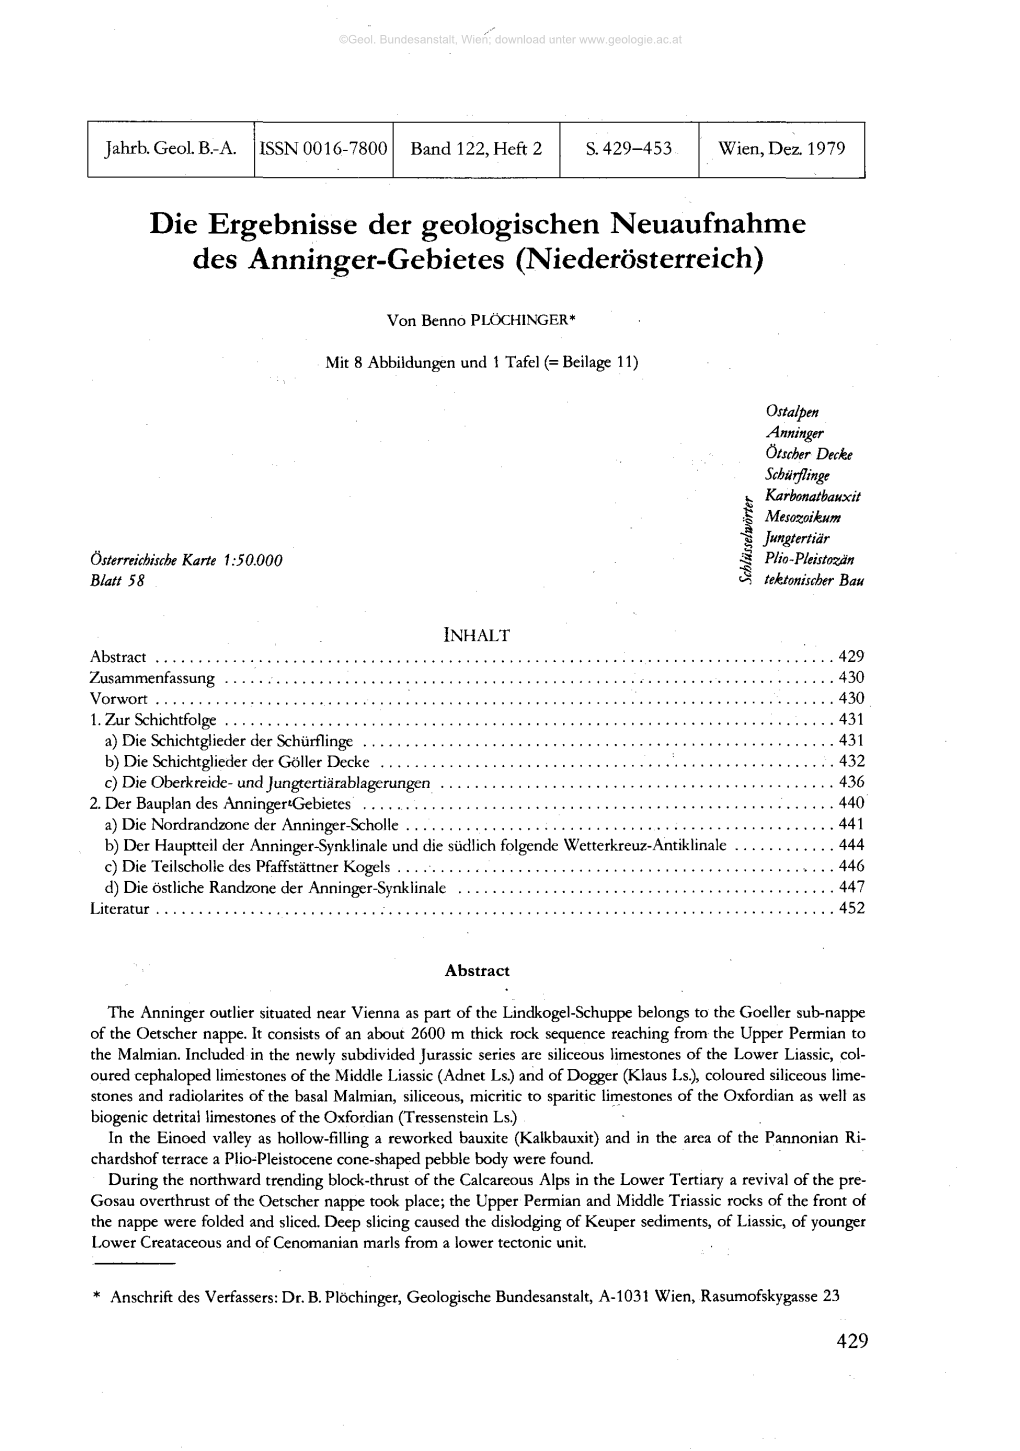 Die Ergebnisse Der Geologischen Neuaufnahme Des Anninger-Gebietes (Niederösterreich)